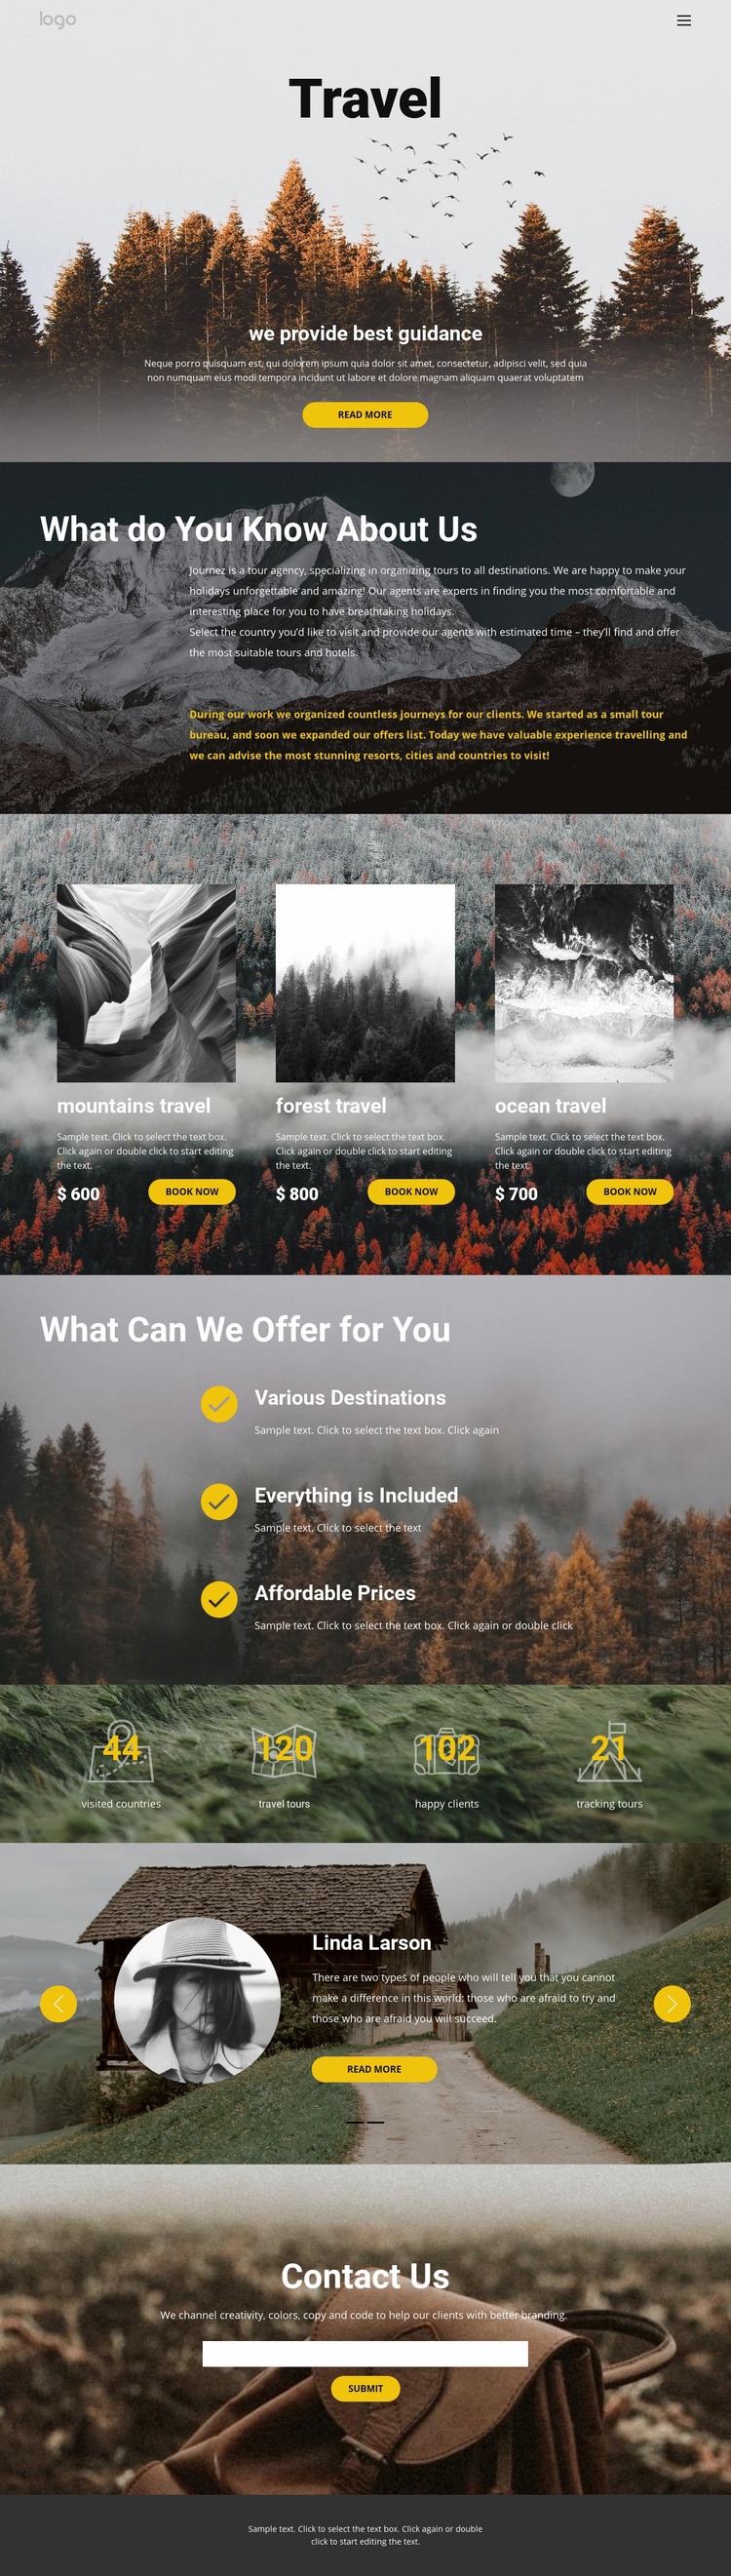 Wild solo travel Web Page Design